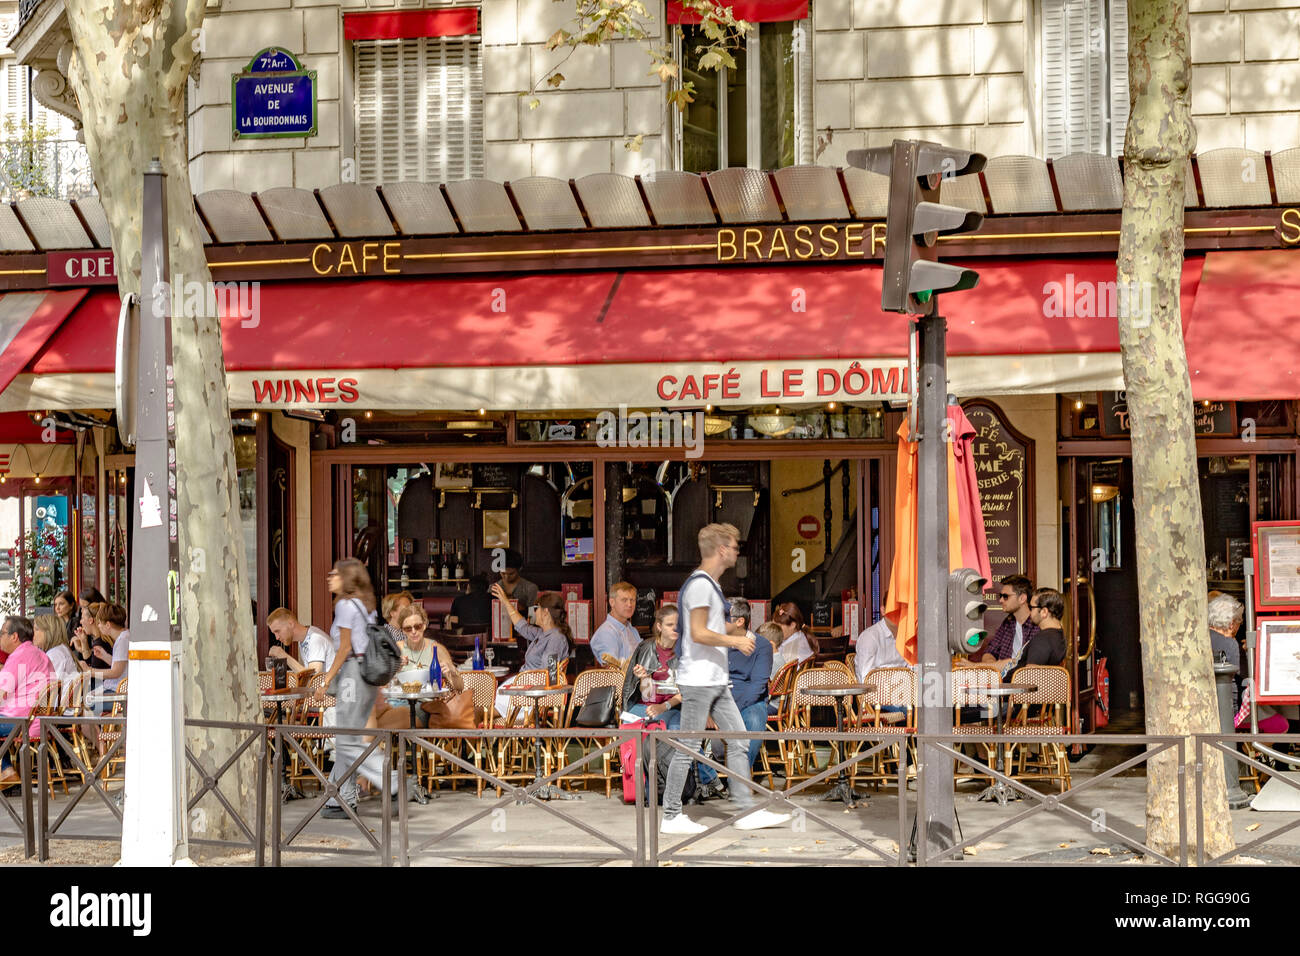 Personnes dînant à l'extérieur sur le trottoir du café le Dôme, rue Saint-Dominique, lors d'une journée d'été à Paris, France Banque D'Images